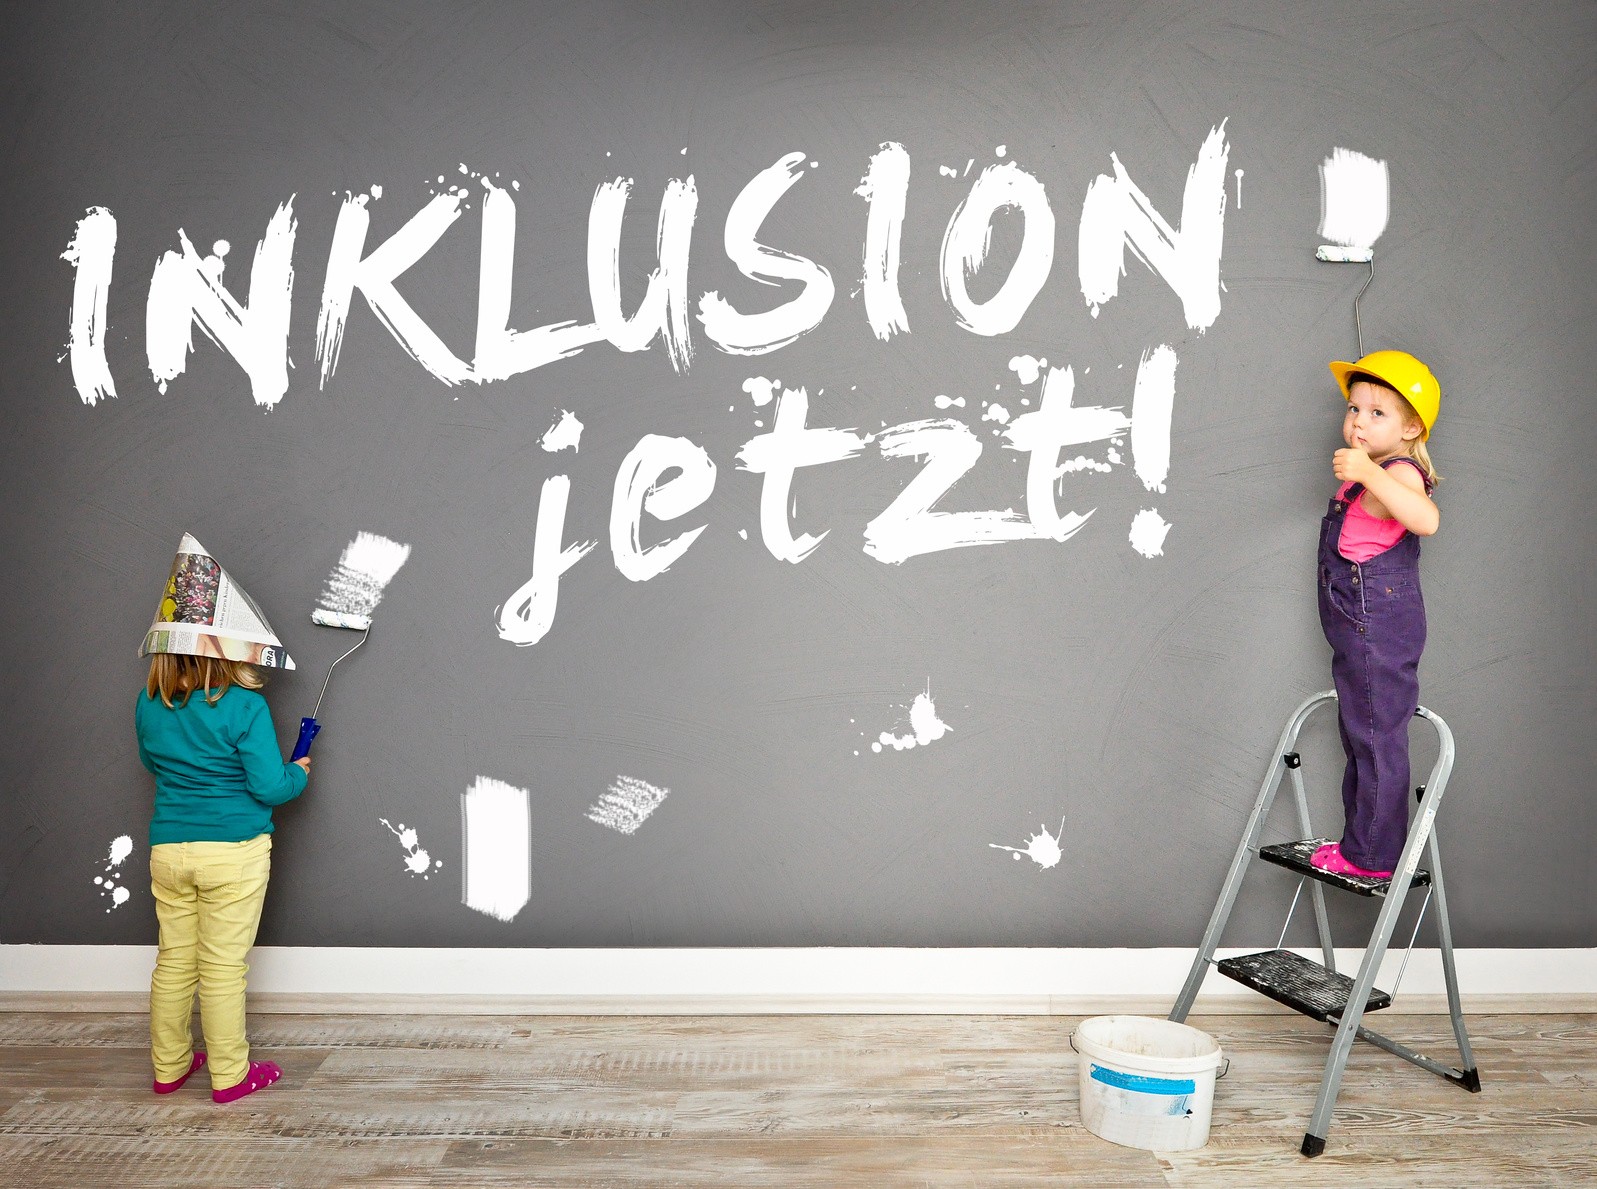 Zwei Kinder in Malerkleidern haben mit weißer Farbe "INKLUSION jetzt!" auf eine dunkle Wand geschrieben.